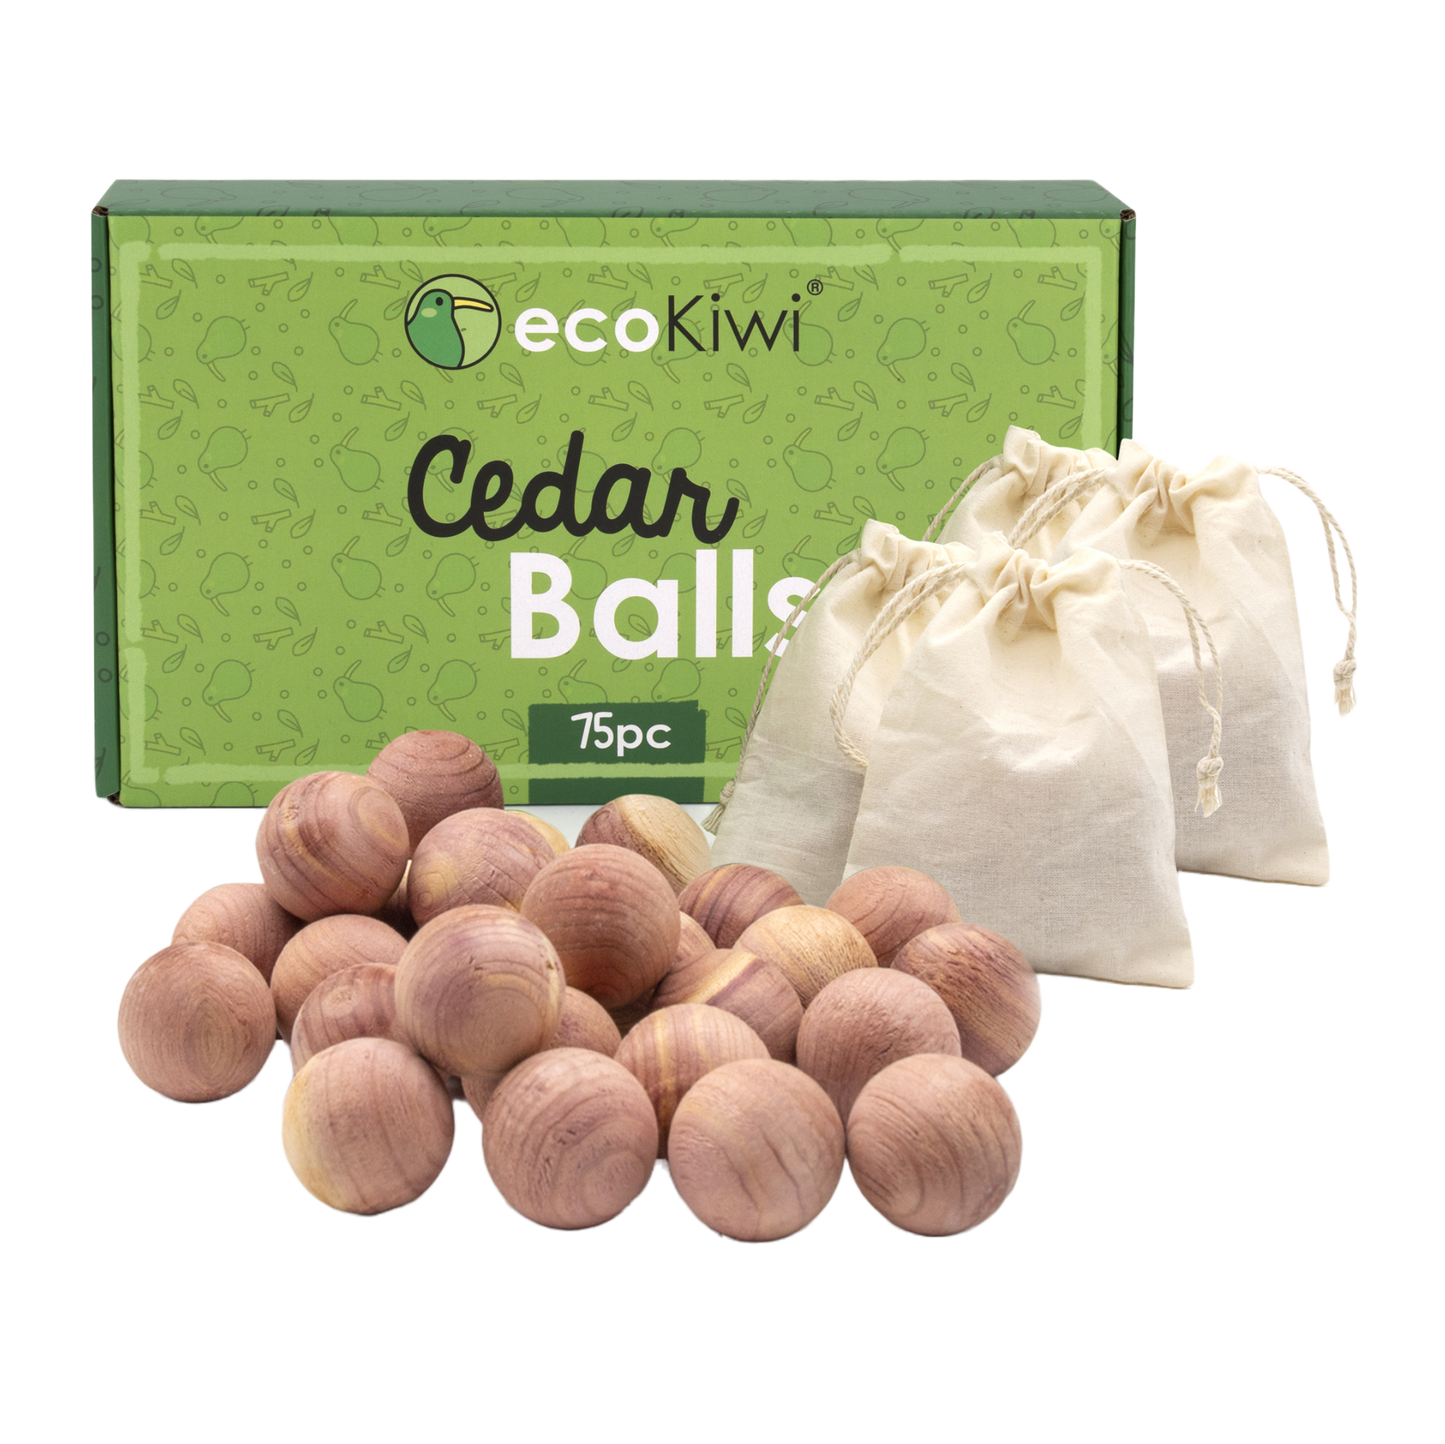 Cedarwood Moth Balls - 20 Balls - Zero In Official Manufacturer